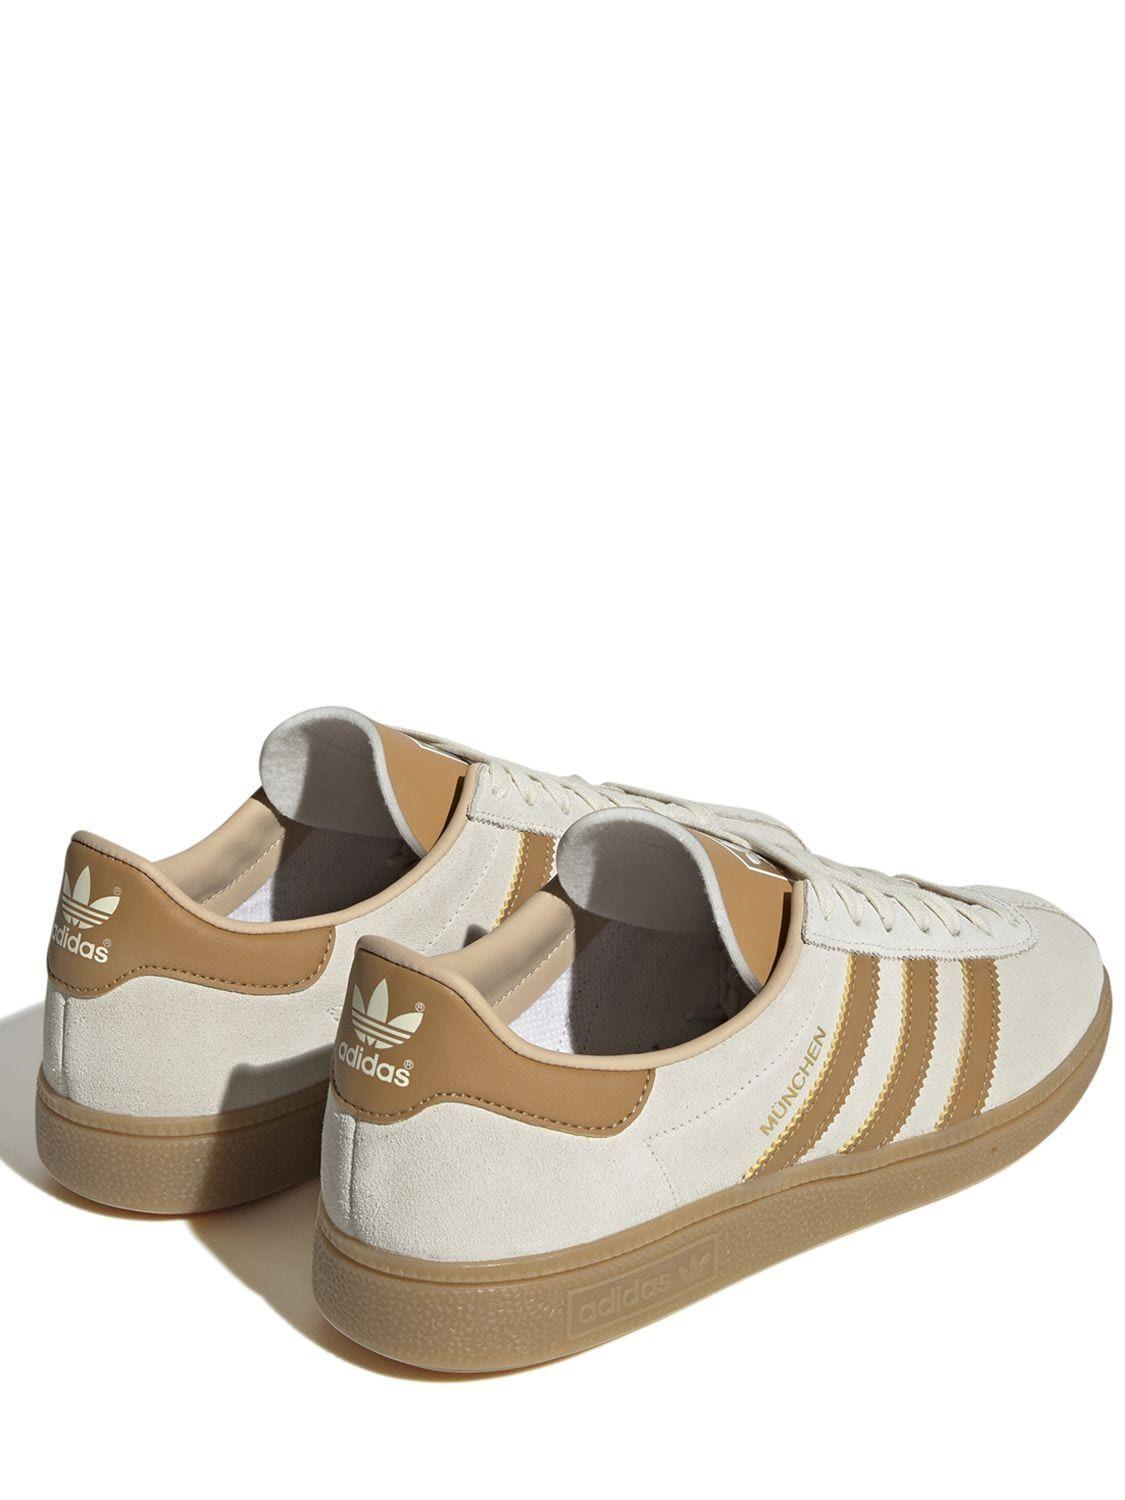 adidas Originals Munchen Sneakers in Brown | Lyst